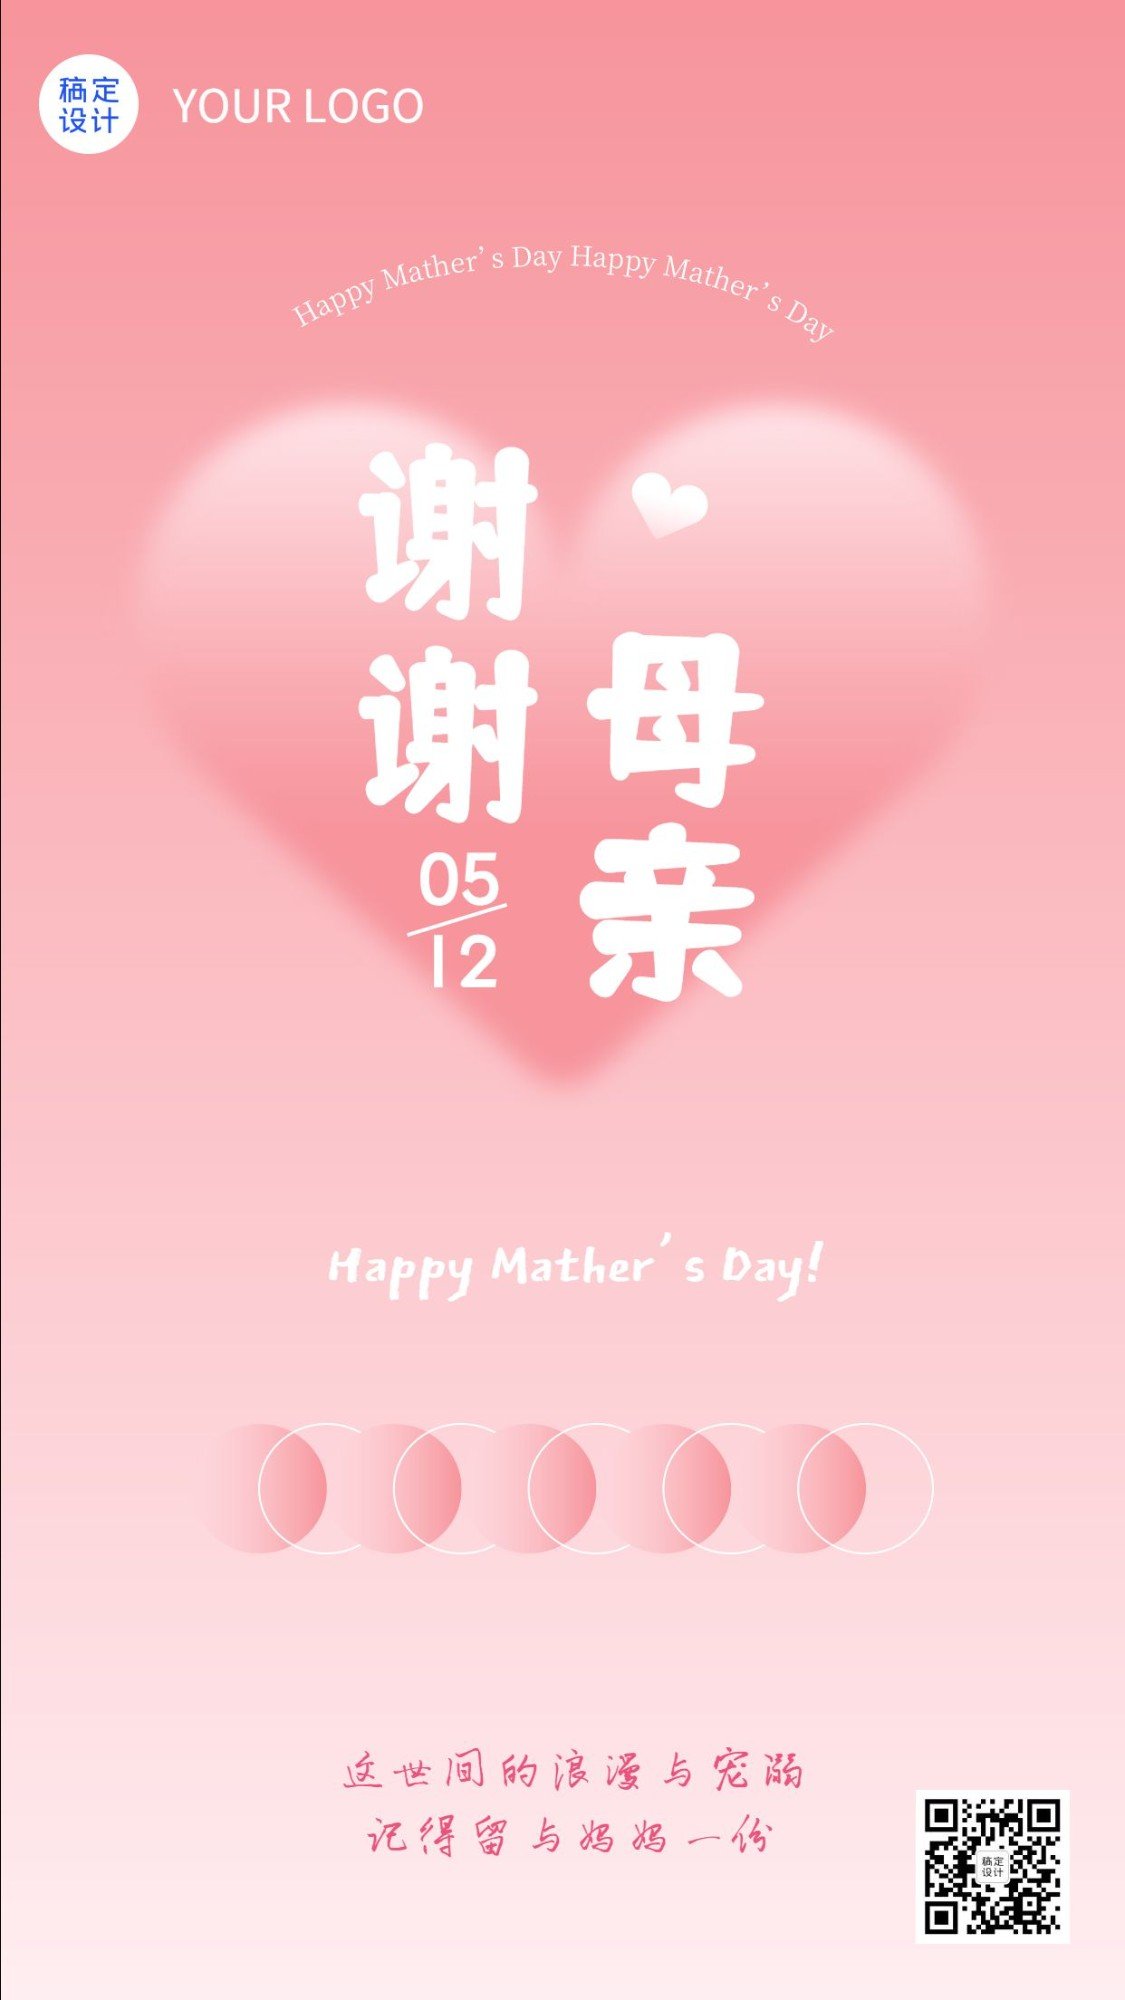 母亲节节日祝福排版手机海报